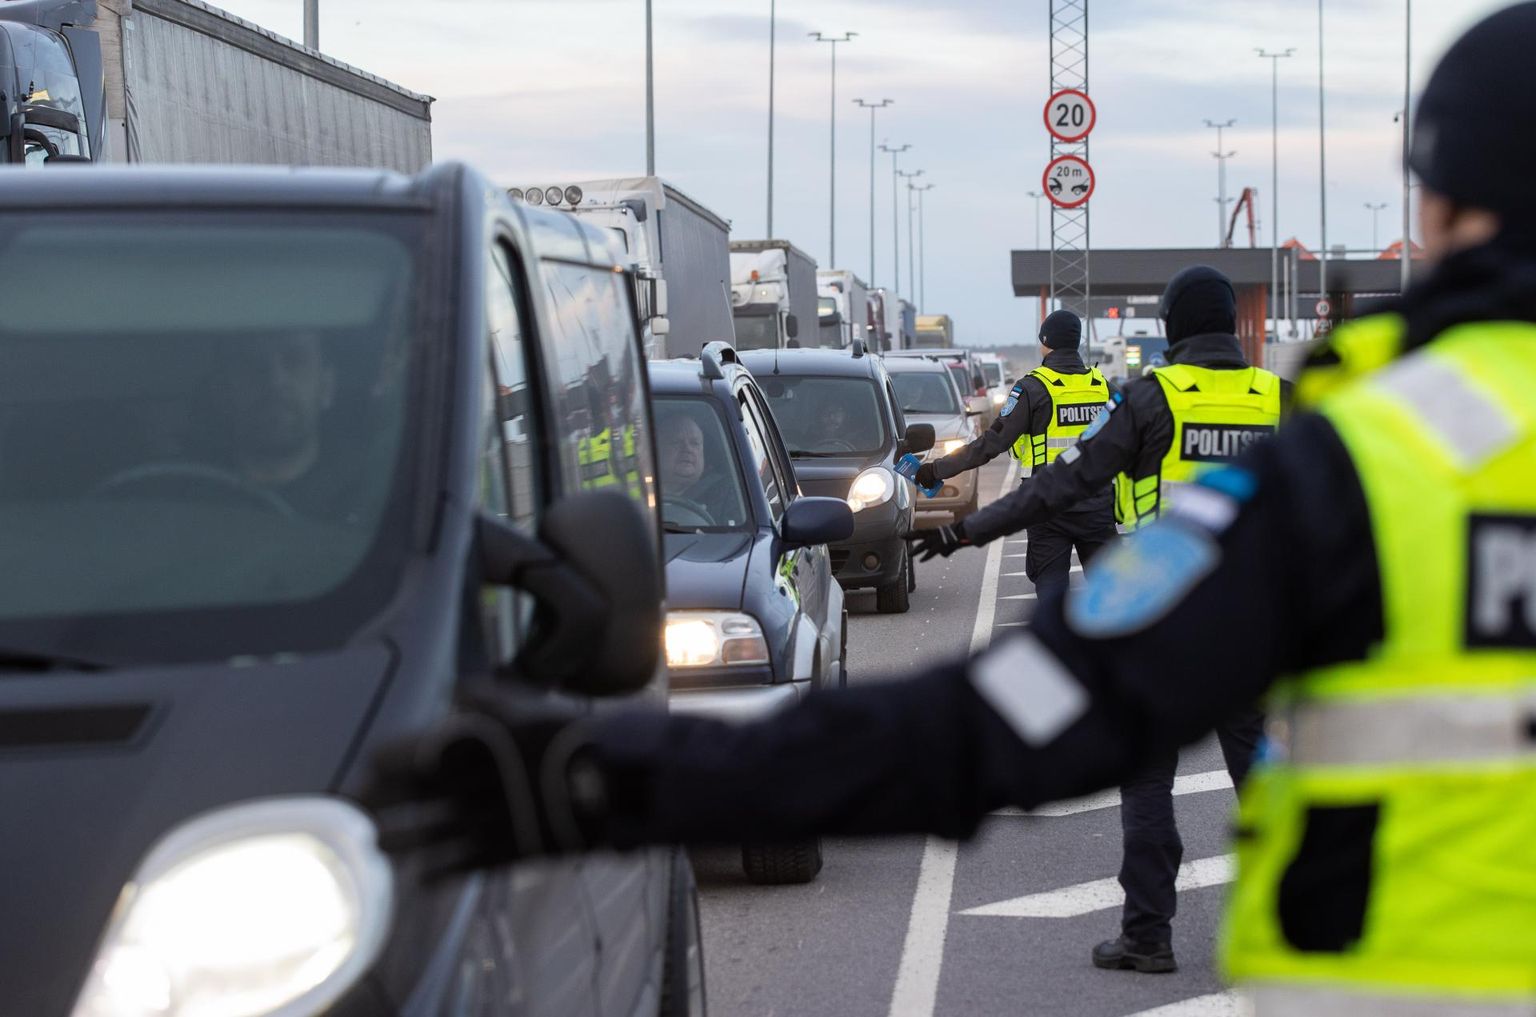 Полиция раздает в Таллиннском порту водителям инфолистки о коронавирусе.